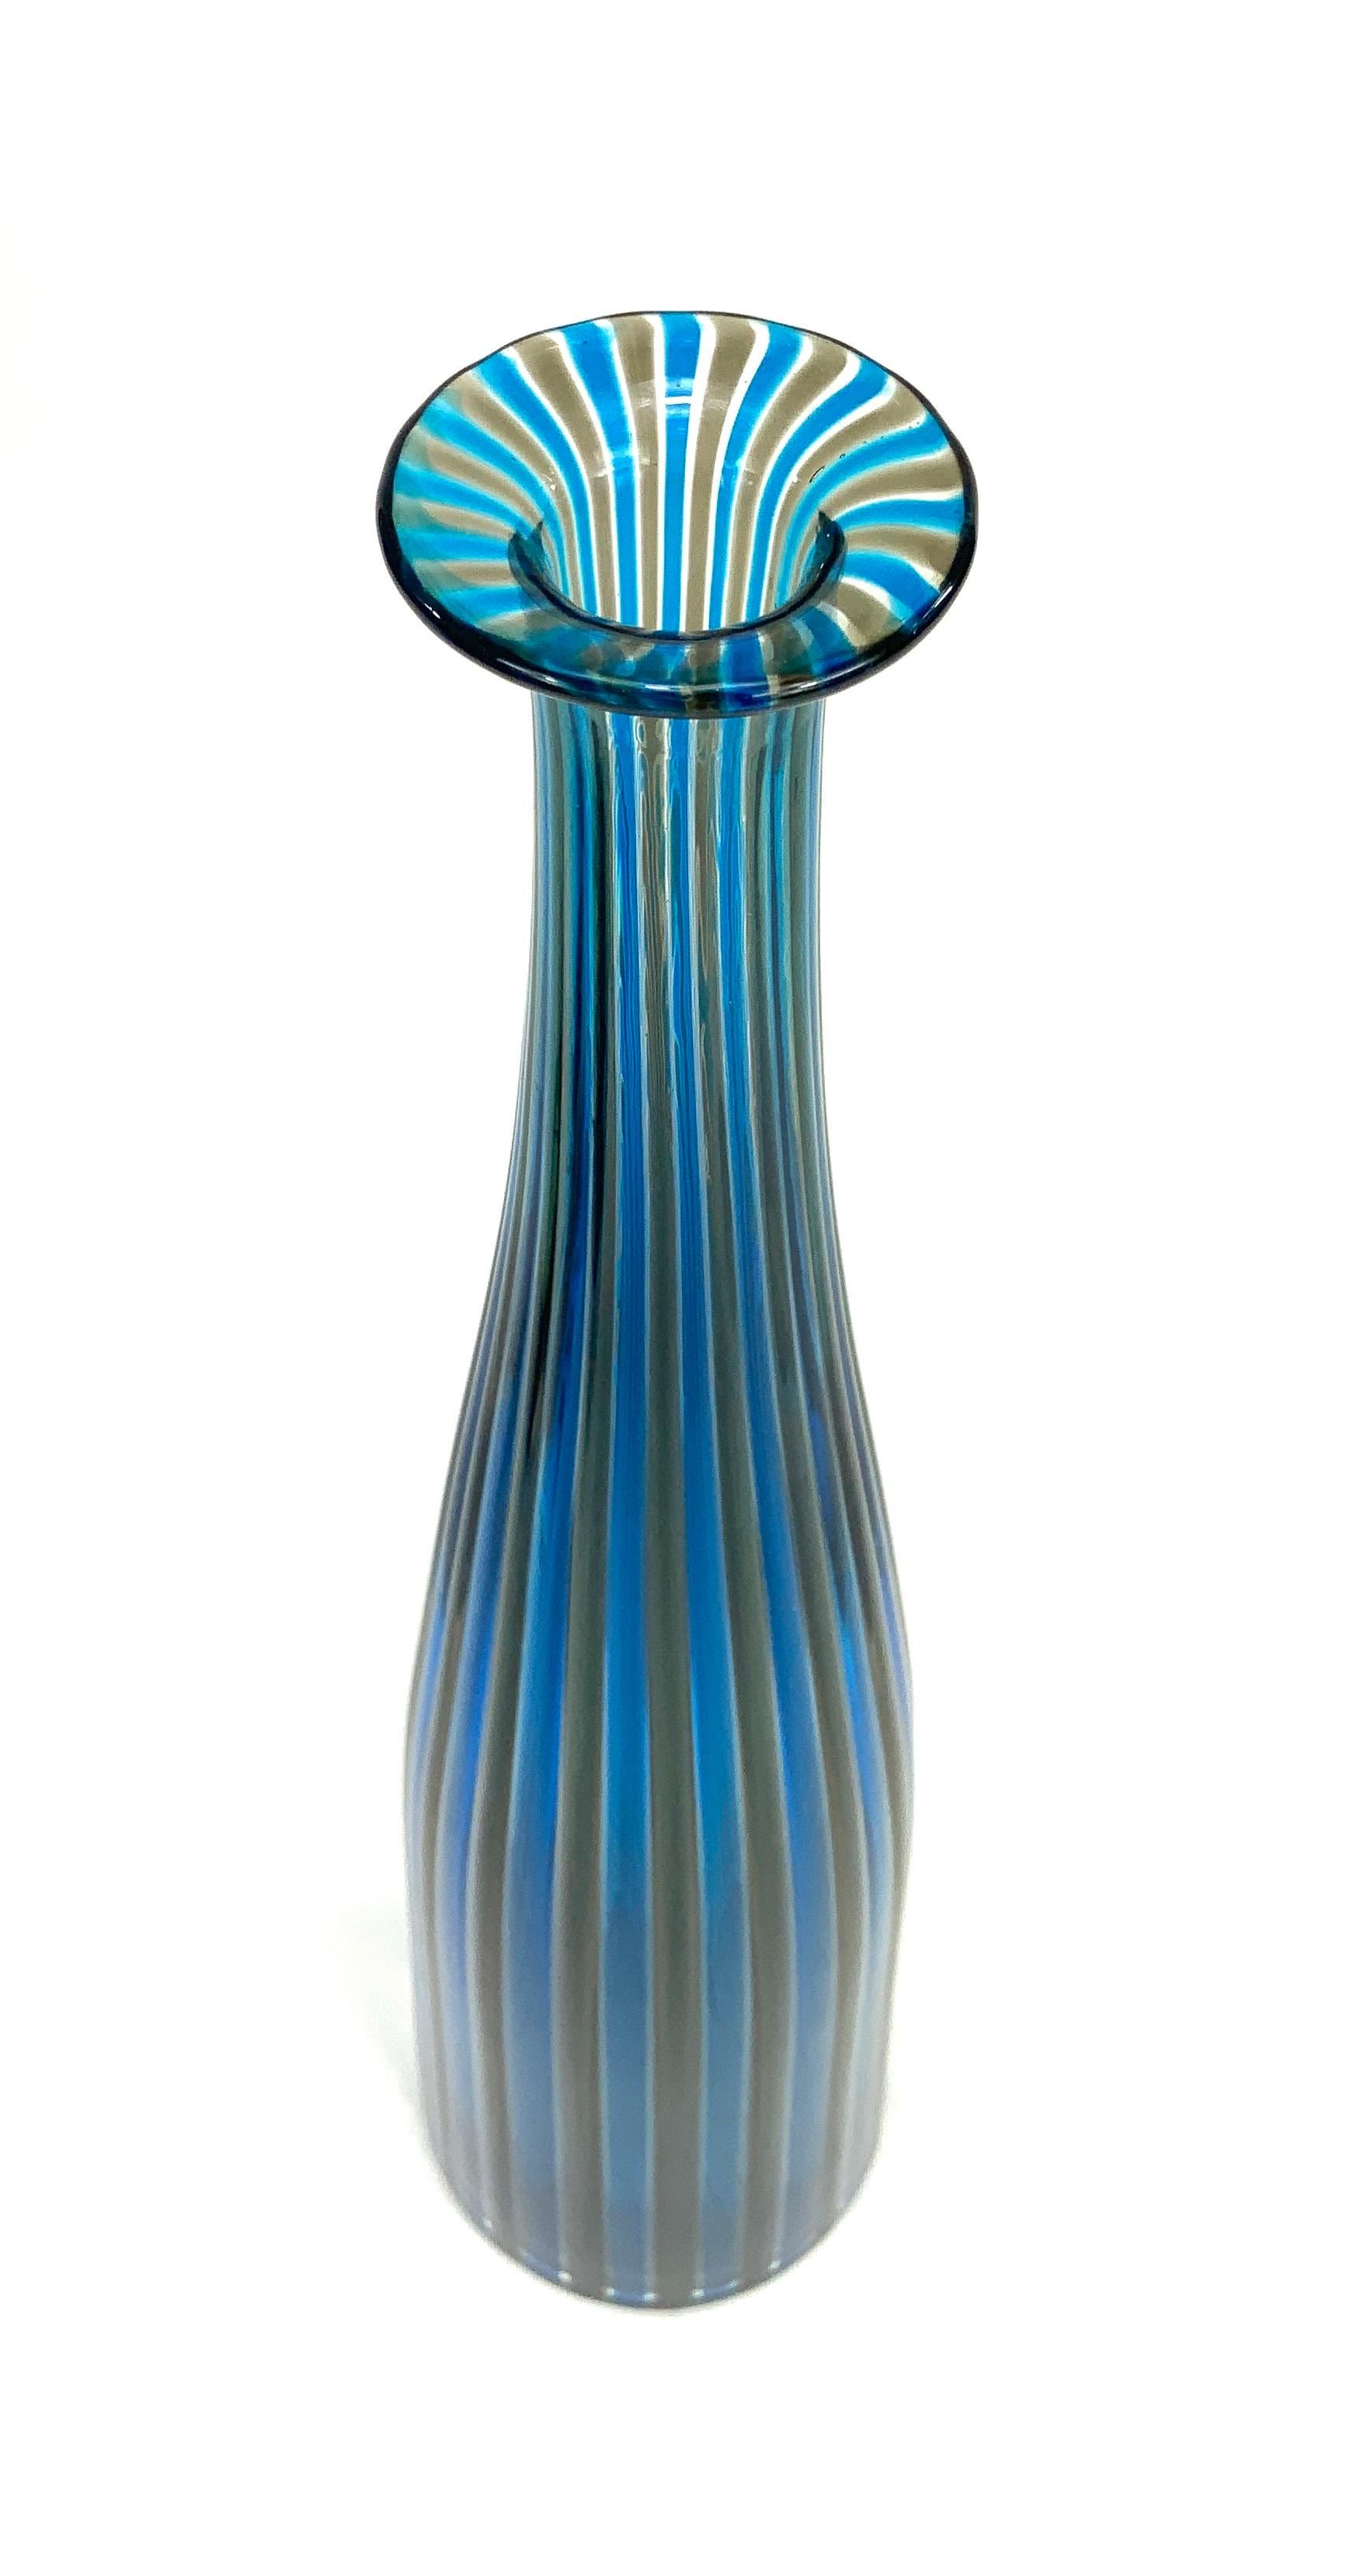 Fulvio Bianconi ist einer der profiliertesten Künstler der Nachkriegszeit, die mit dem Glasunternehmen Venini, einem Giganten der Glasherstellung des 20. Jahrhunderts, zusammengearbeitet haben.  Seine Werke befinden sich in renommierten Sammlungen